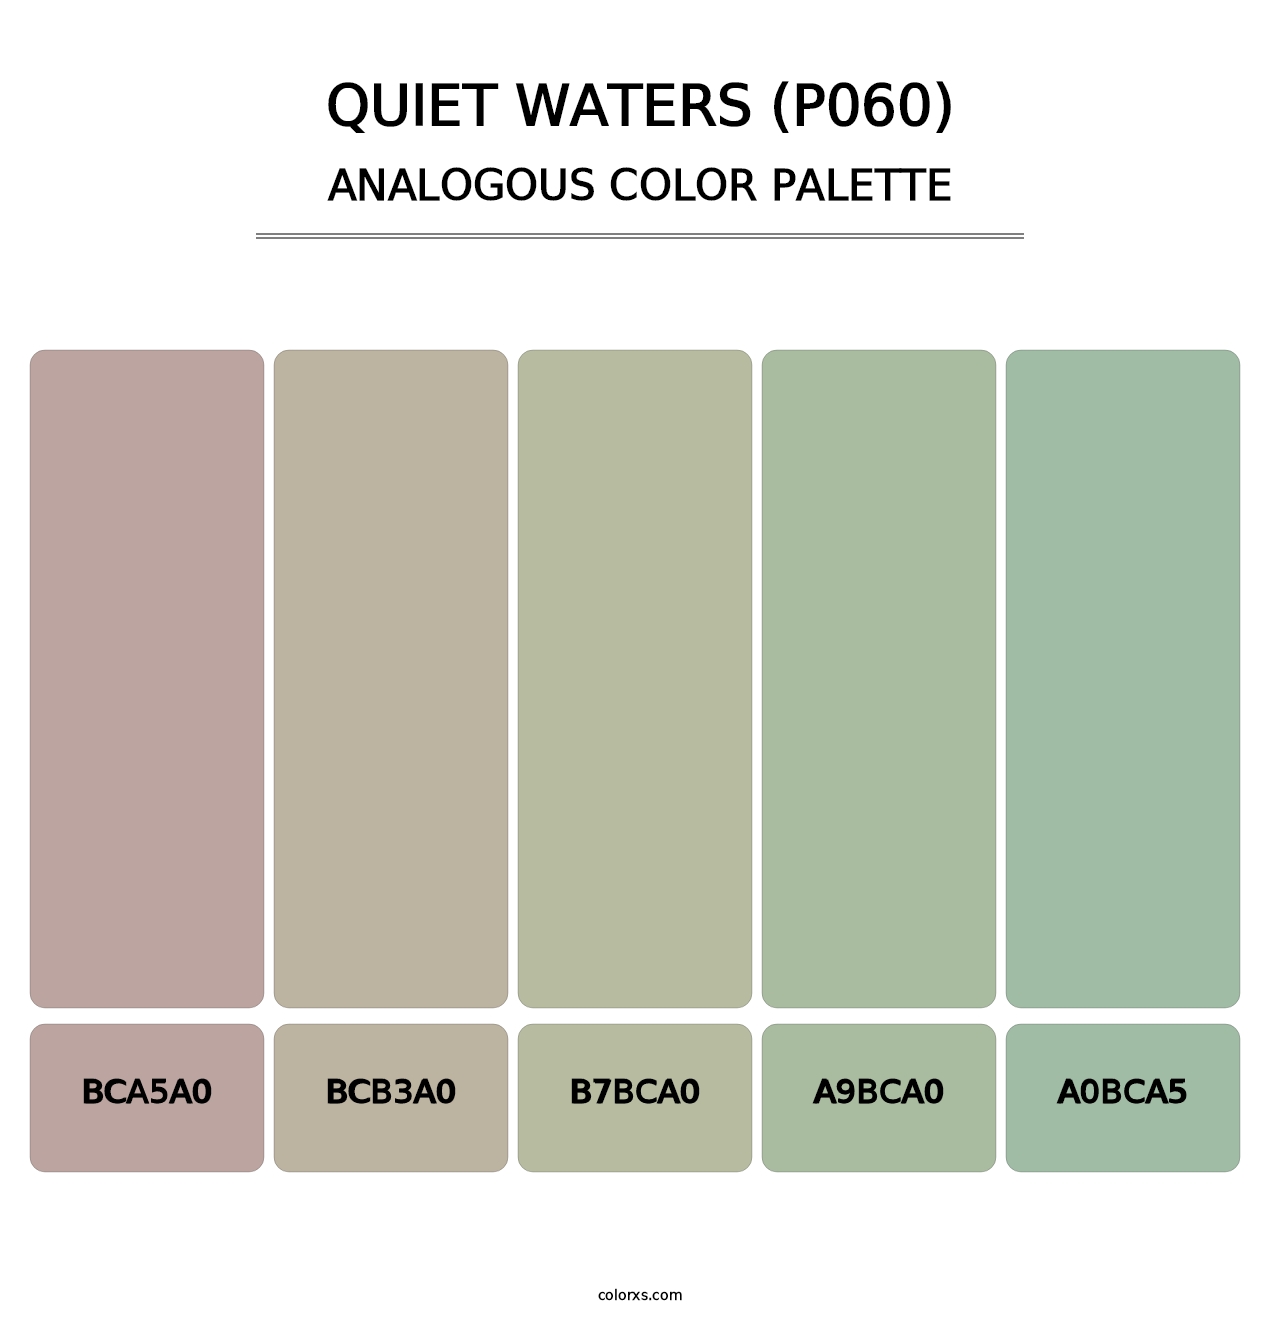 Quiet Waters (P060) - Analogous Color Palette